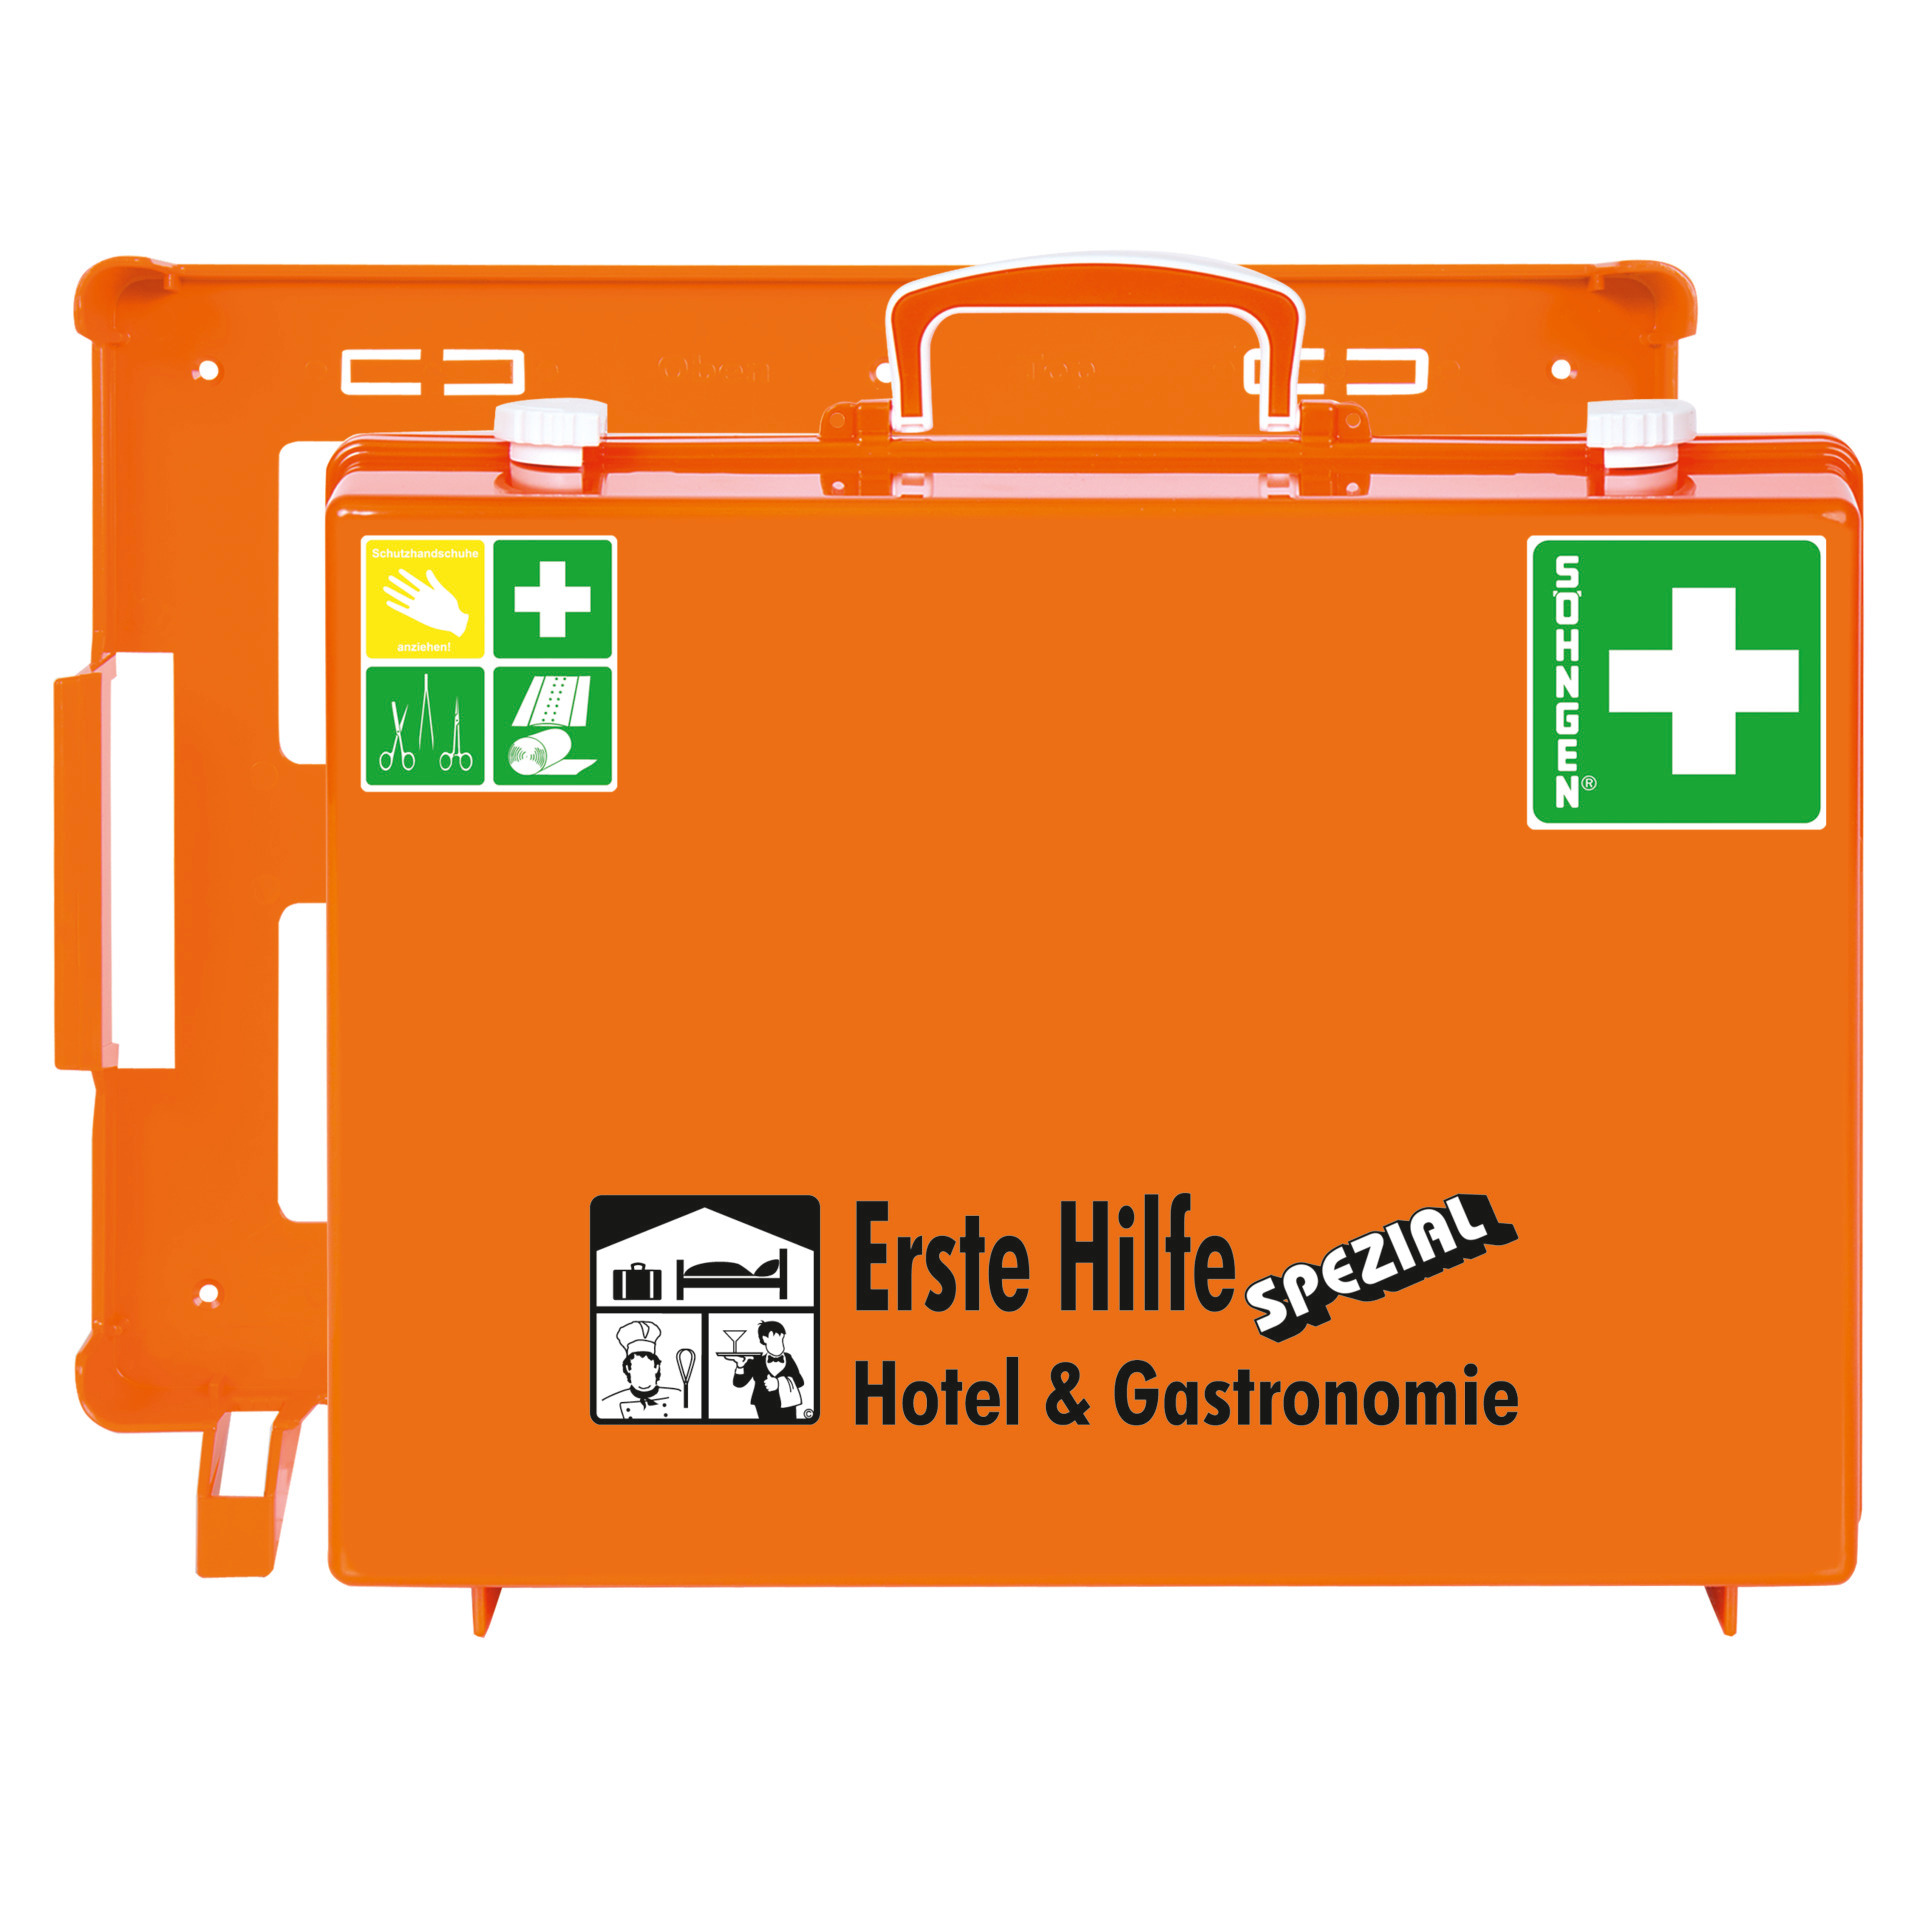 Erste-Hilfe-Koffer Spezial "Hotel&Gastronomie" # 0360103 - nach DIN 13157